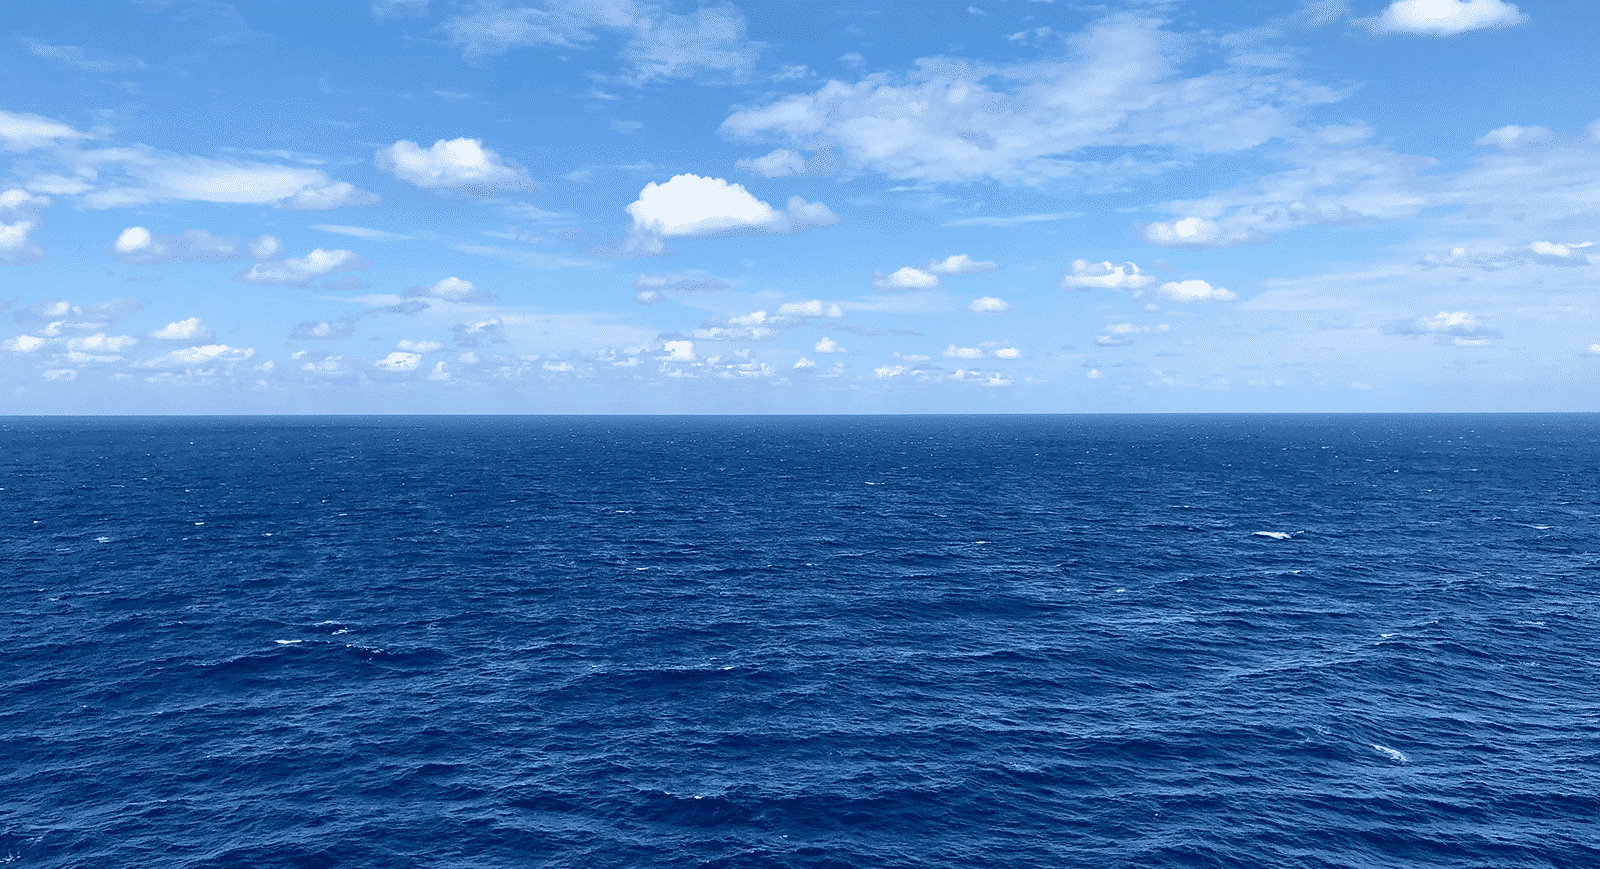 Oceano Atlântico - Características, importância e curiosidades